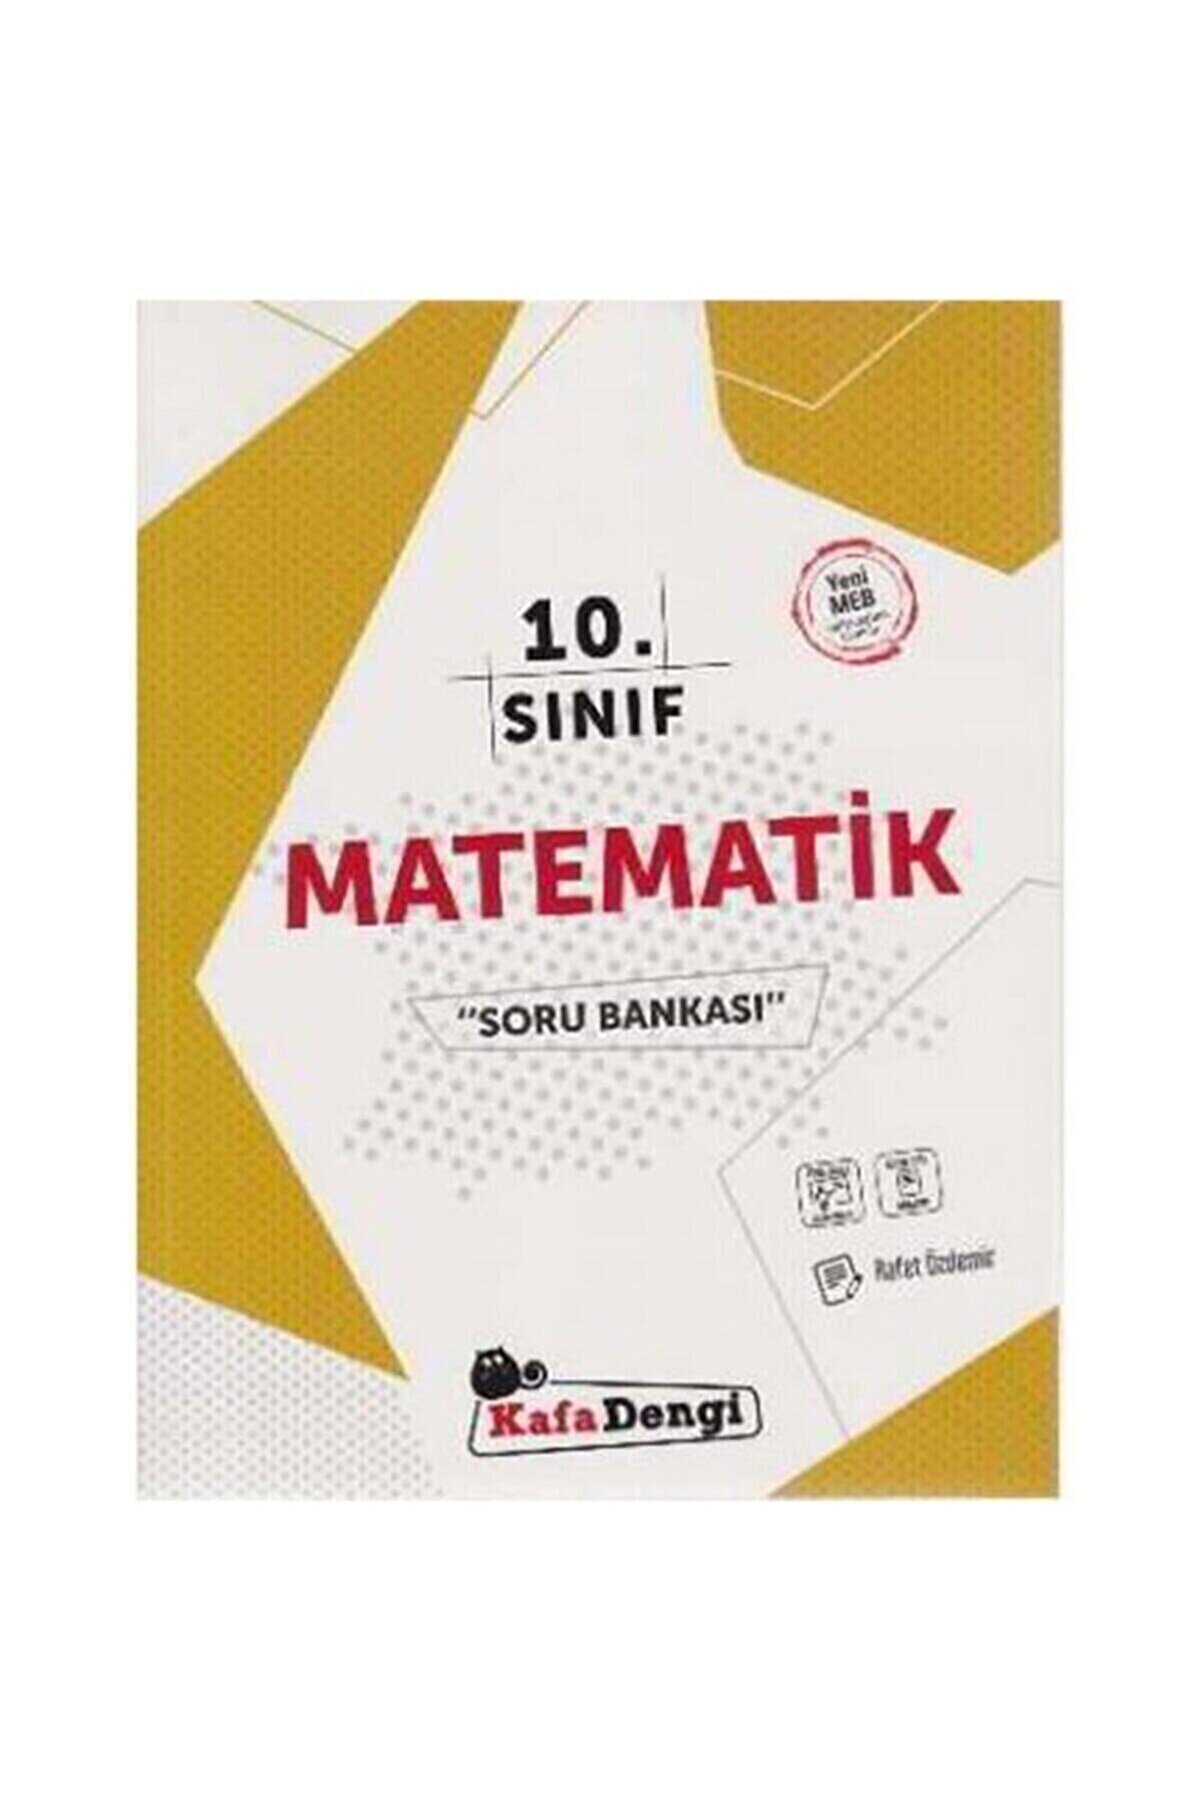 Kafa Dengi Yayınları 10. Sınıf Matematik Soru Bankası Video Çözüm Pj Masks Kalem Çantası